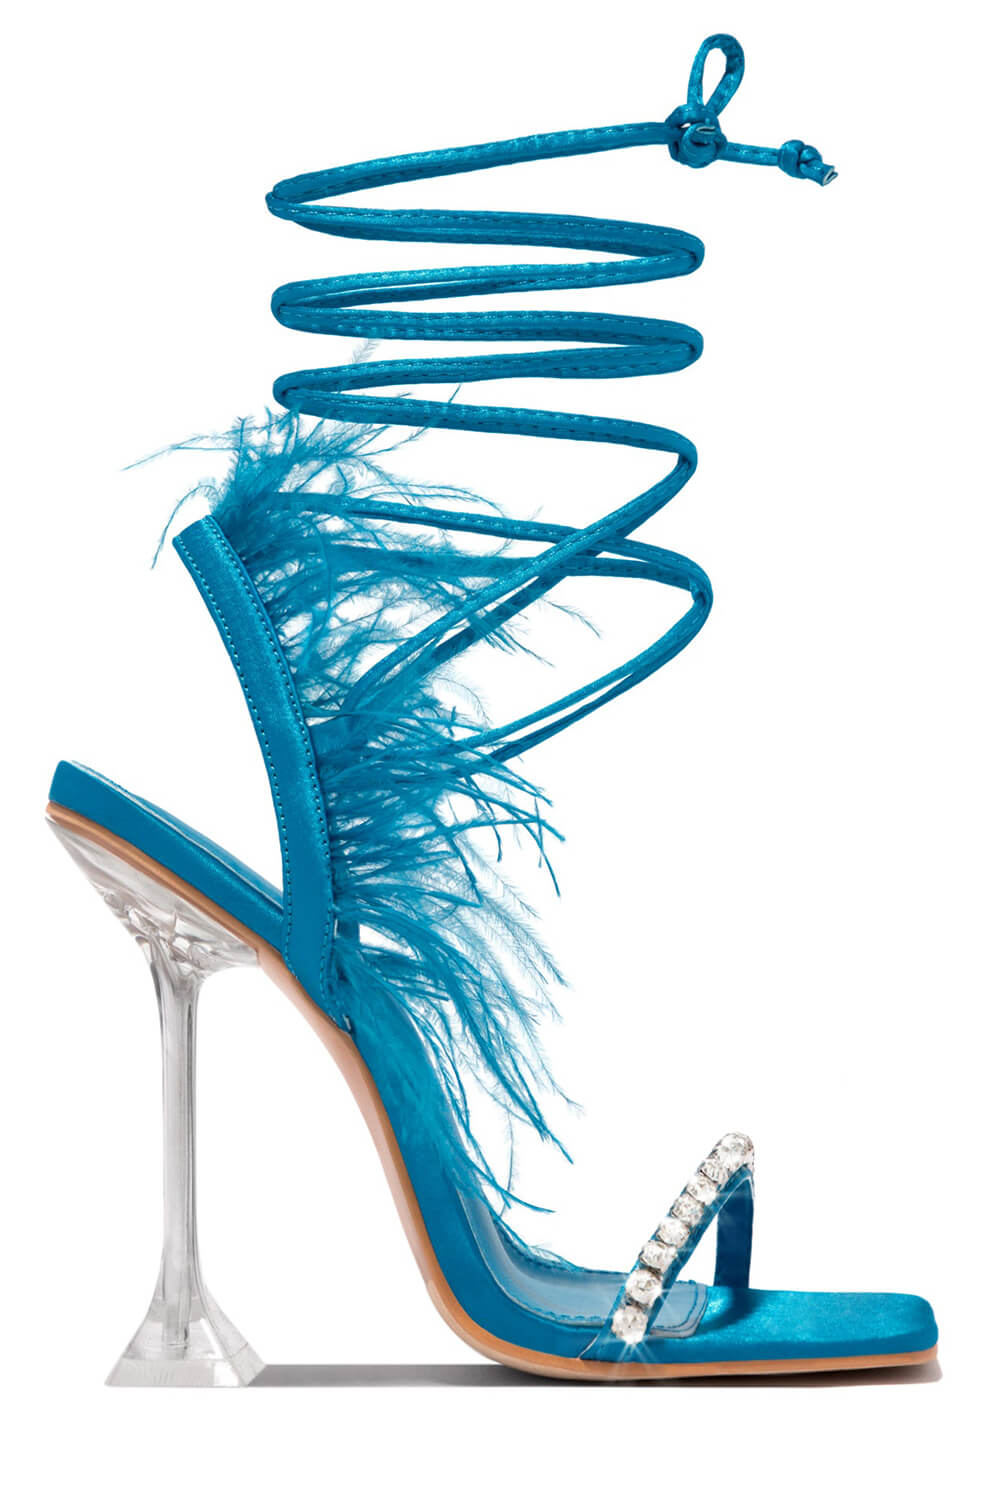 ZINC BLUE Lace-Up Heels | Buy Women's HEELS Online | Novo Shoes NZ